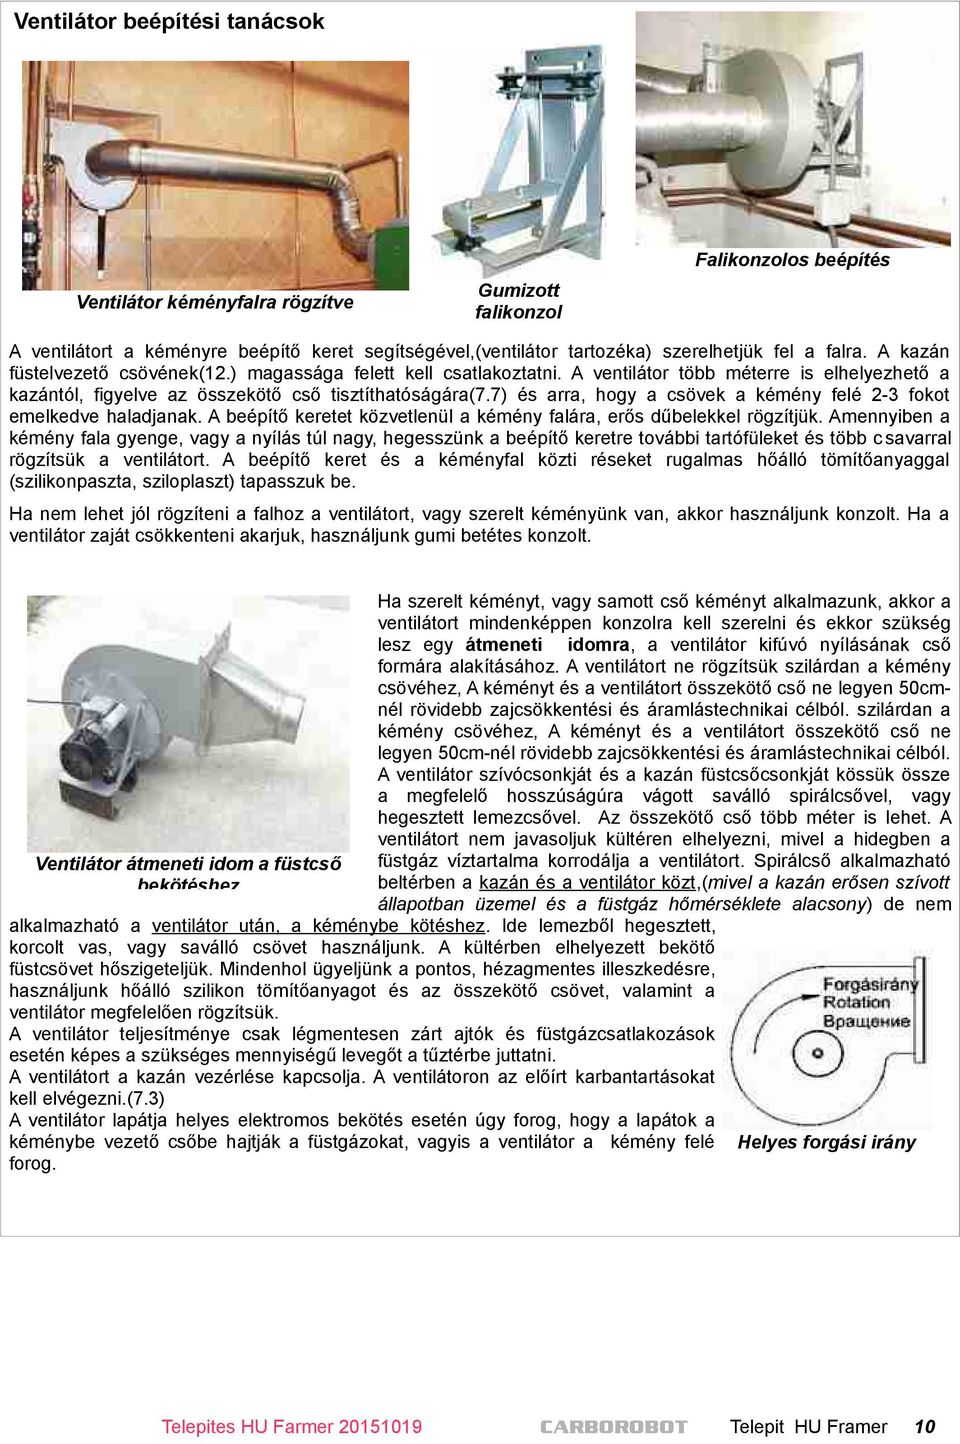 CARBOROBOT 40-60kW BIO Farmer melegvíz kazánok tervezési segédlete - PDF  Free Download